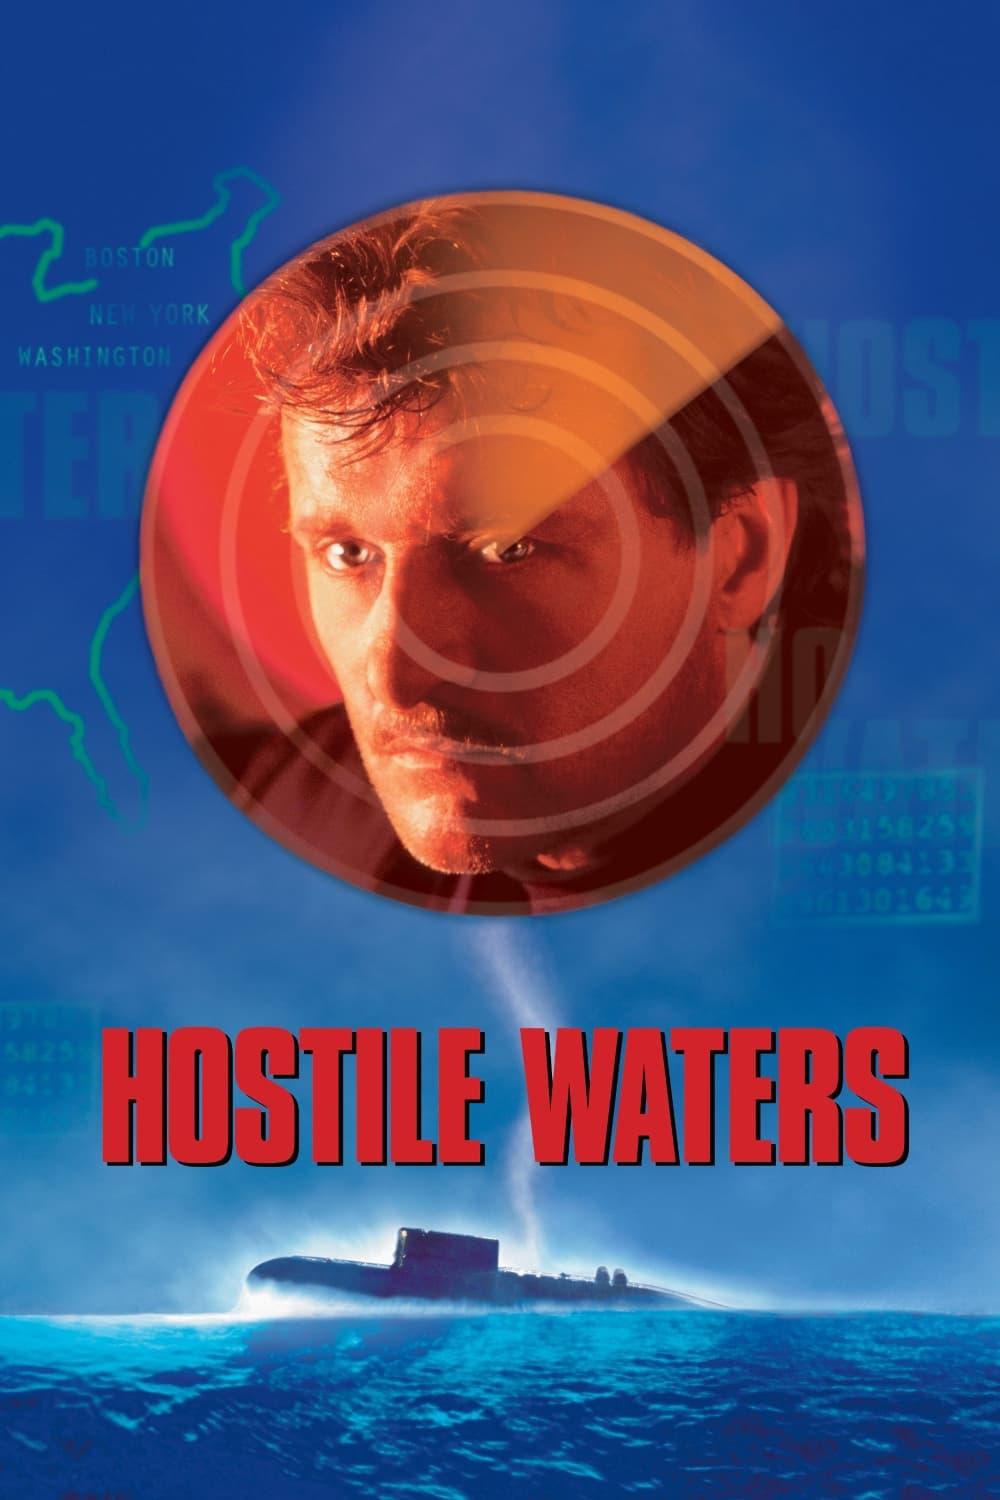 Hostile Waters poster